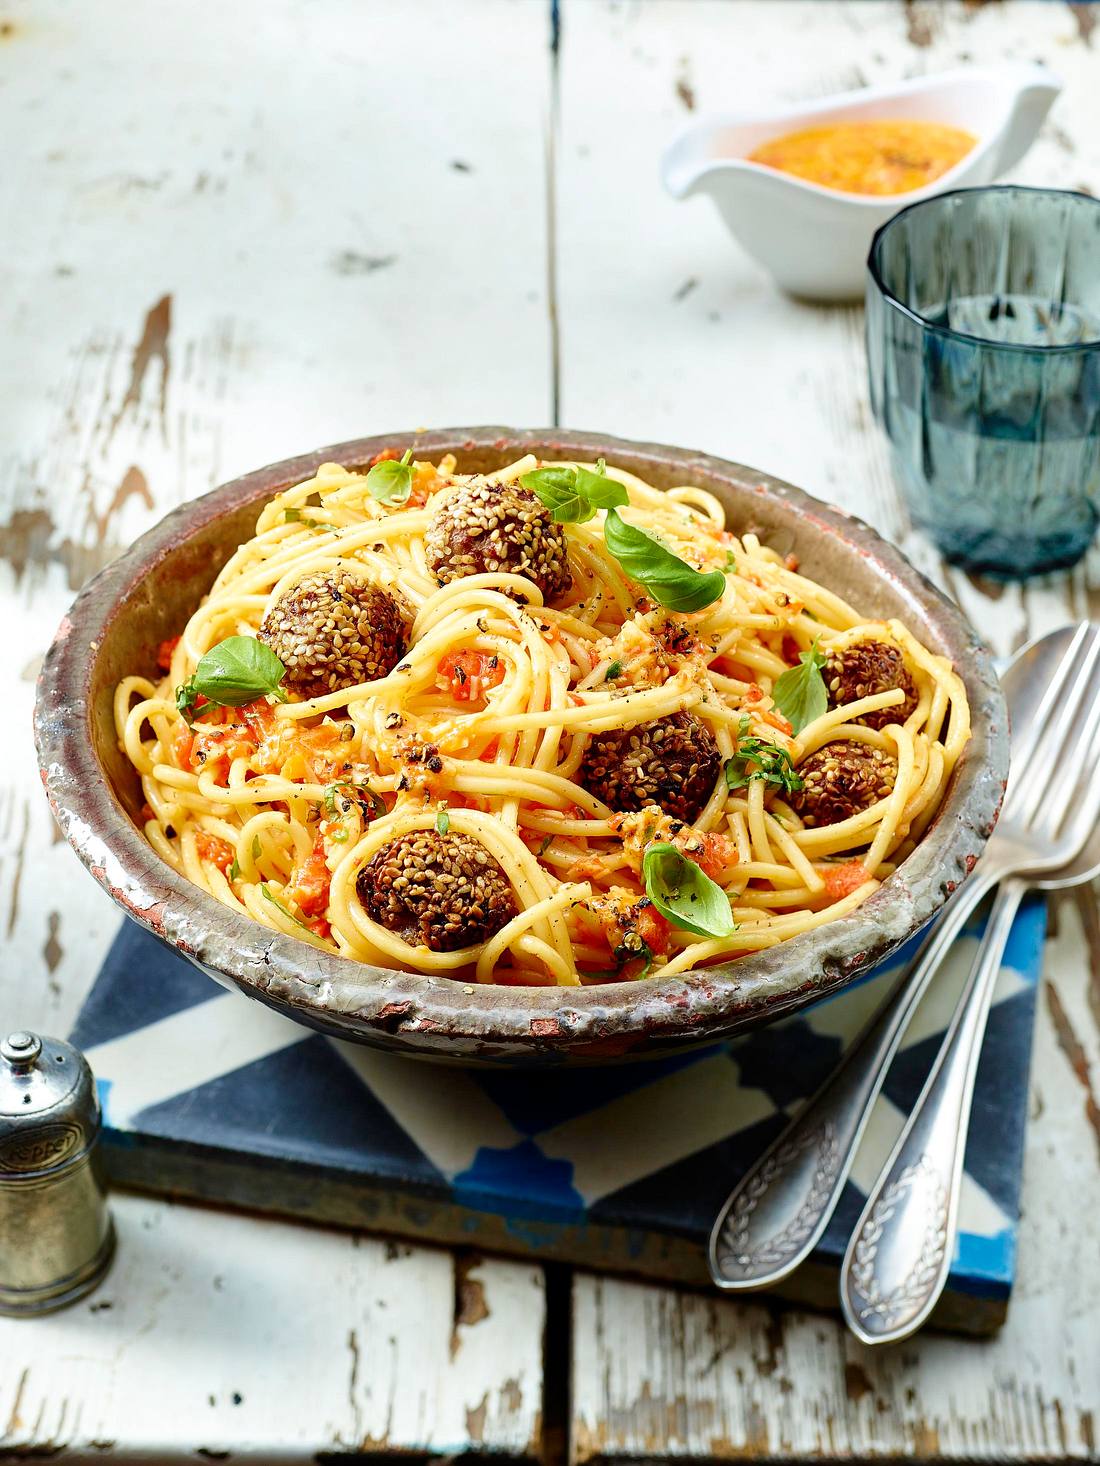 Mozzarella-Sesam-Hackbällchen auf Spaghetti Rezept | LECKER